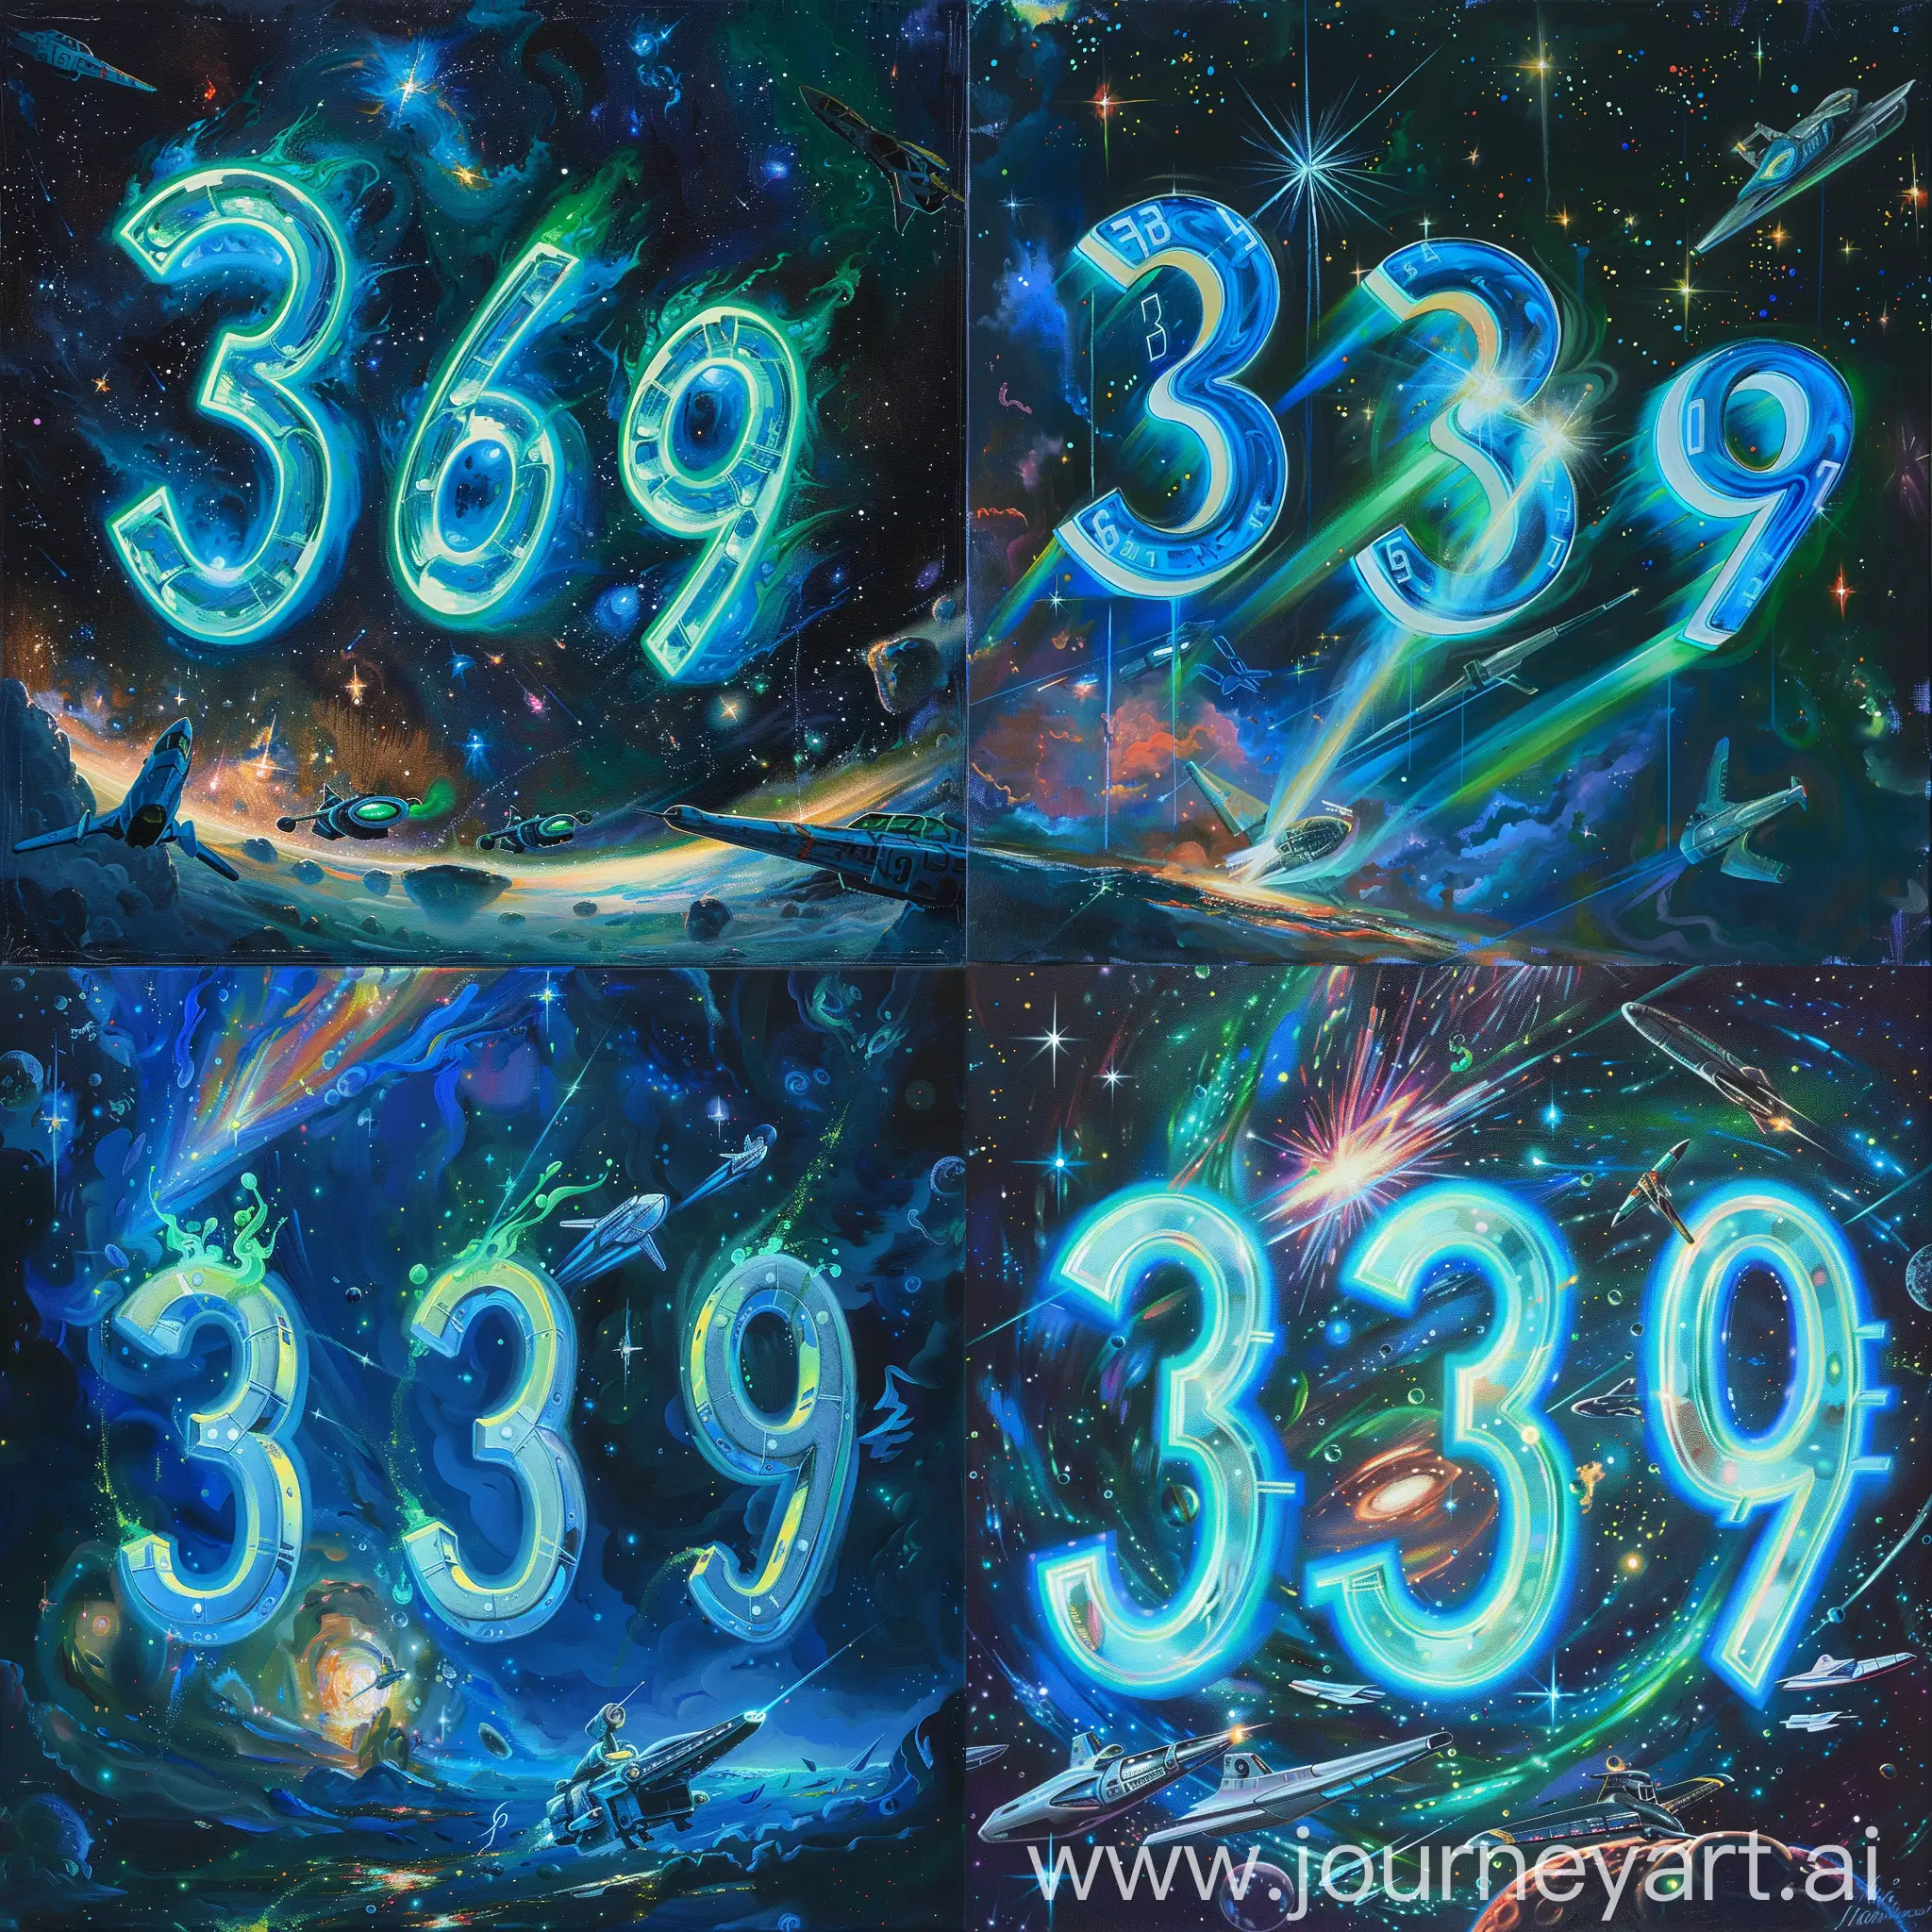 三个数字 3、6、9 悬浮在科幻场景中，它们发出蓝色和绿色的光芒，周围是星空和宇宙飞船，用油画绘制，数字排列成三角形，背景是黑暗的太空，有星辰和星云的光芒 